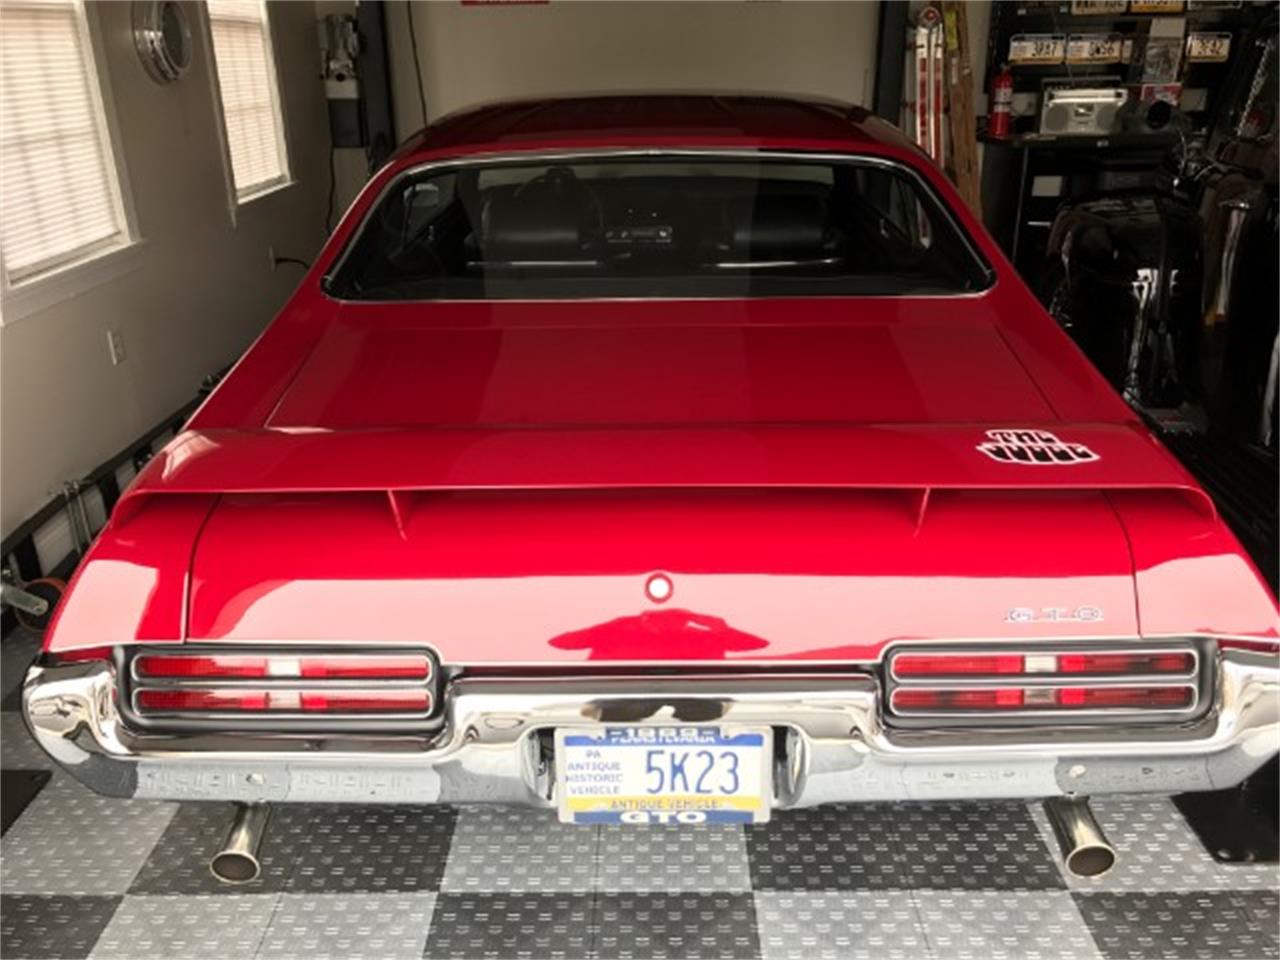 1969 Pontiac GTO (The Judge) for sale in Wichita Falls, TX